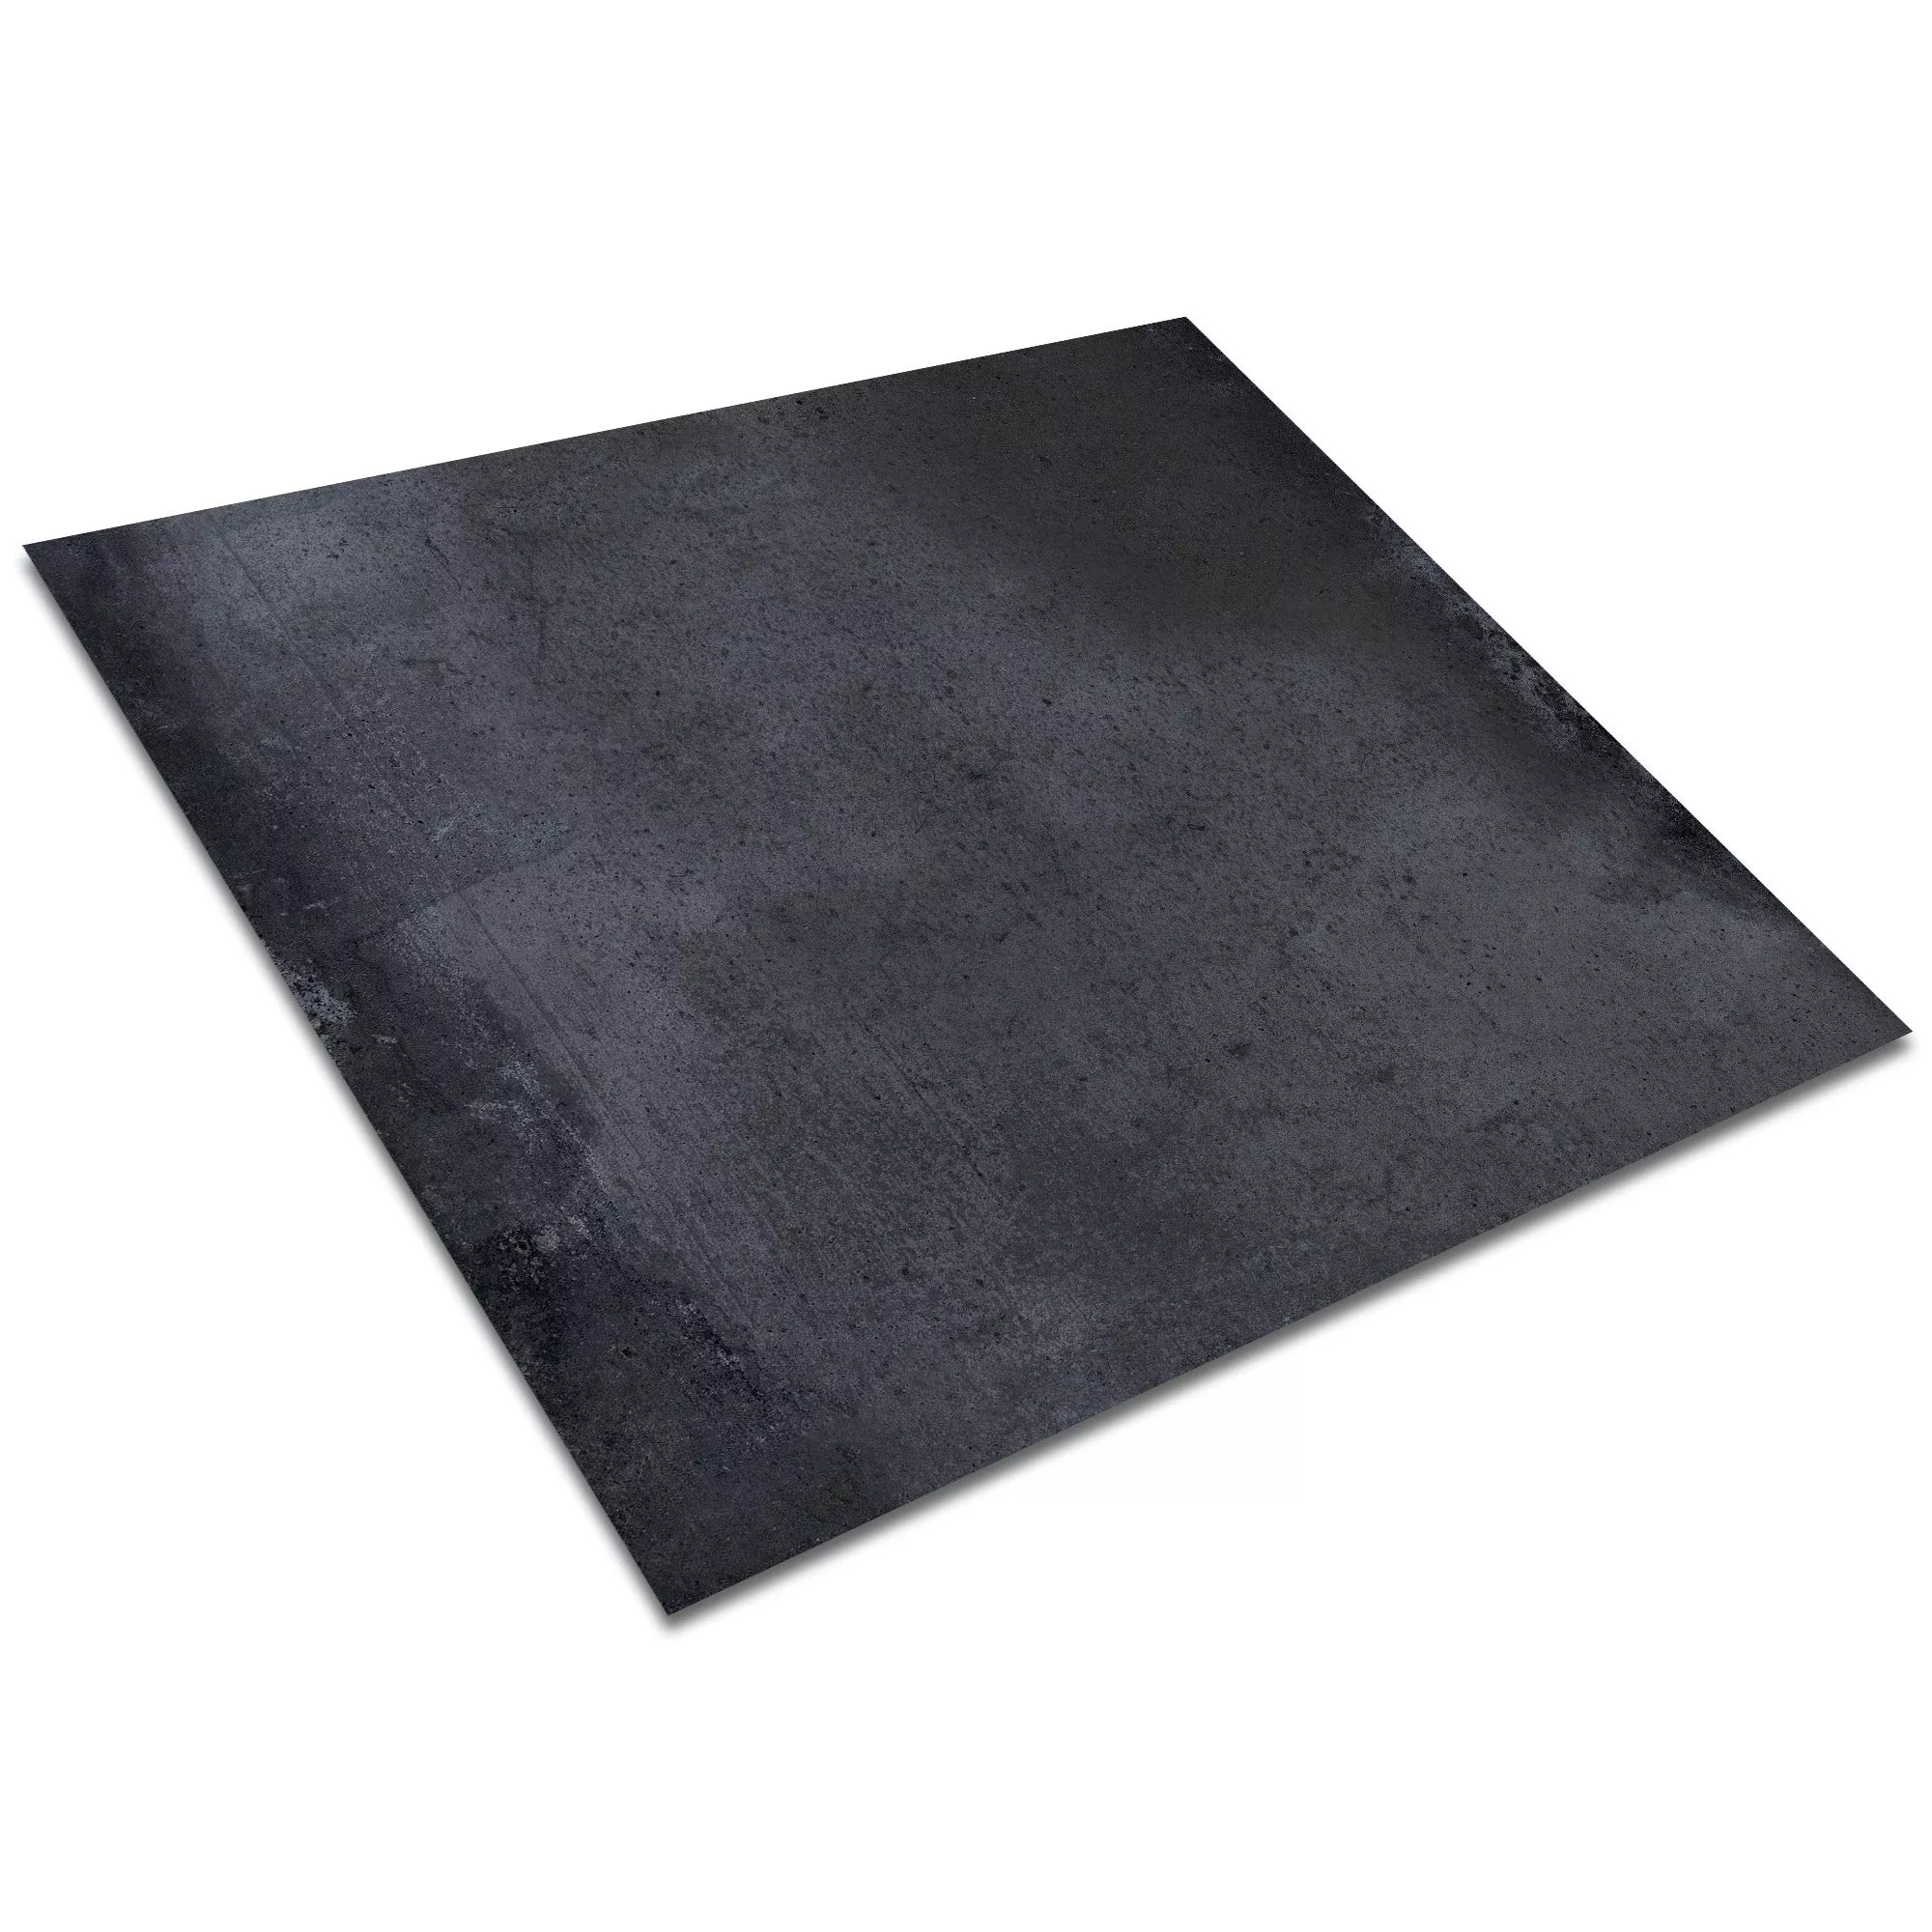 Vzorek Podlahová Dlaždice Cementový Vzhled Maryland Antracitová 60x60cm